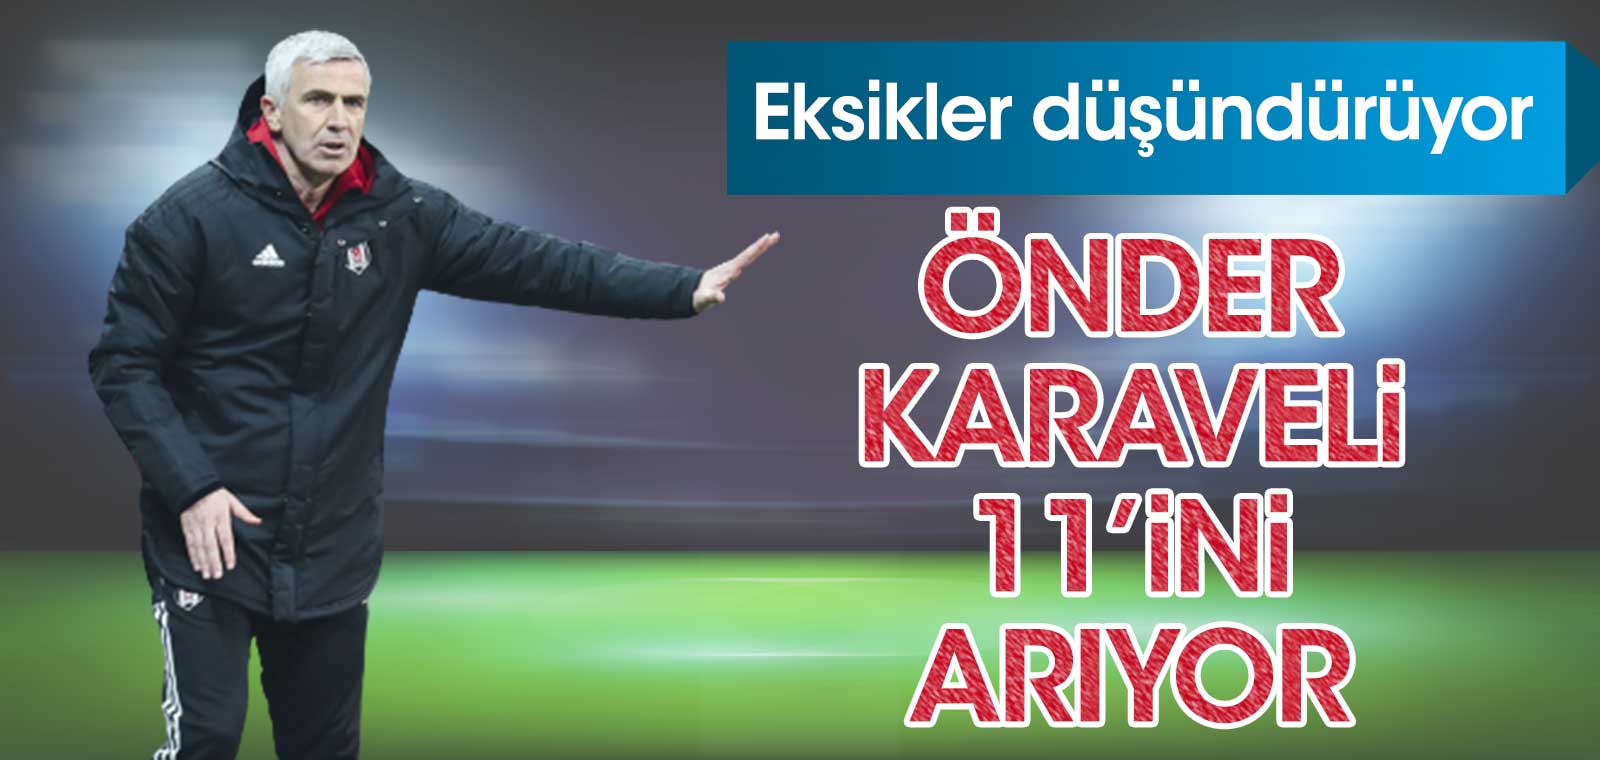 Beşiktaş'ta Önder Karaveli 11'ini arıyor